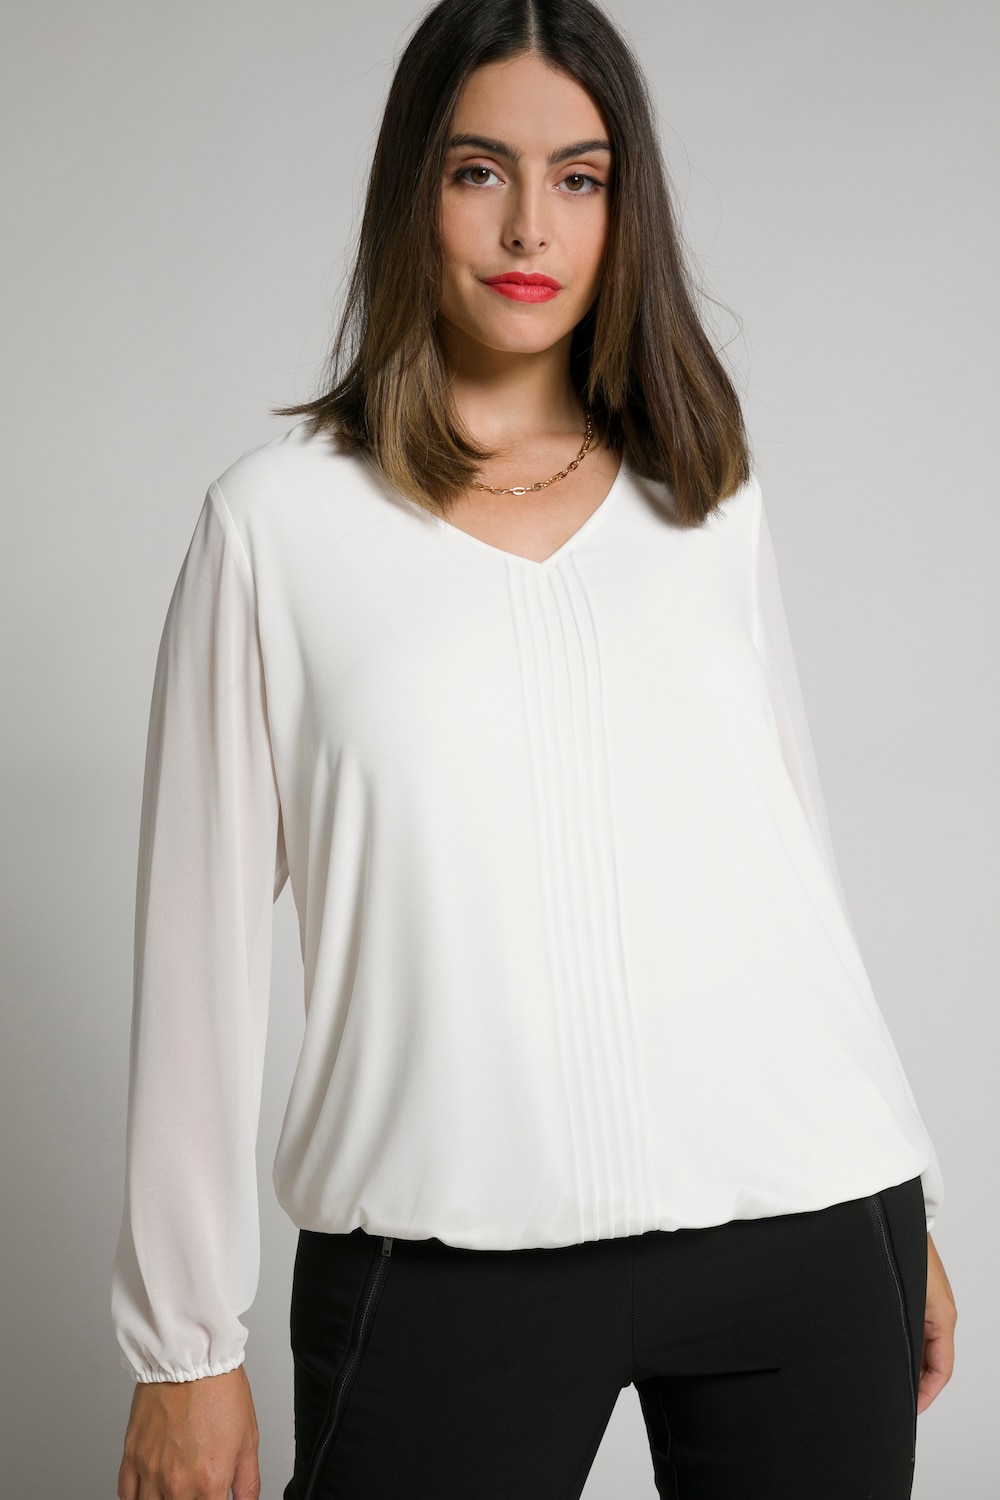 Plus Size 2 Layer Blouse, Woman, white, size: 28/30, polyester/viscose, Ulla Popken